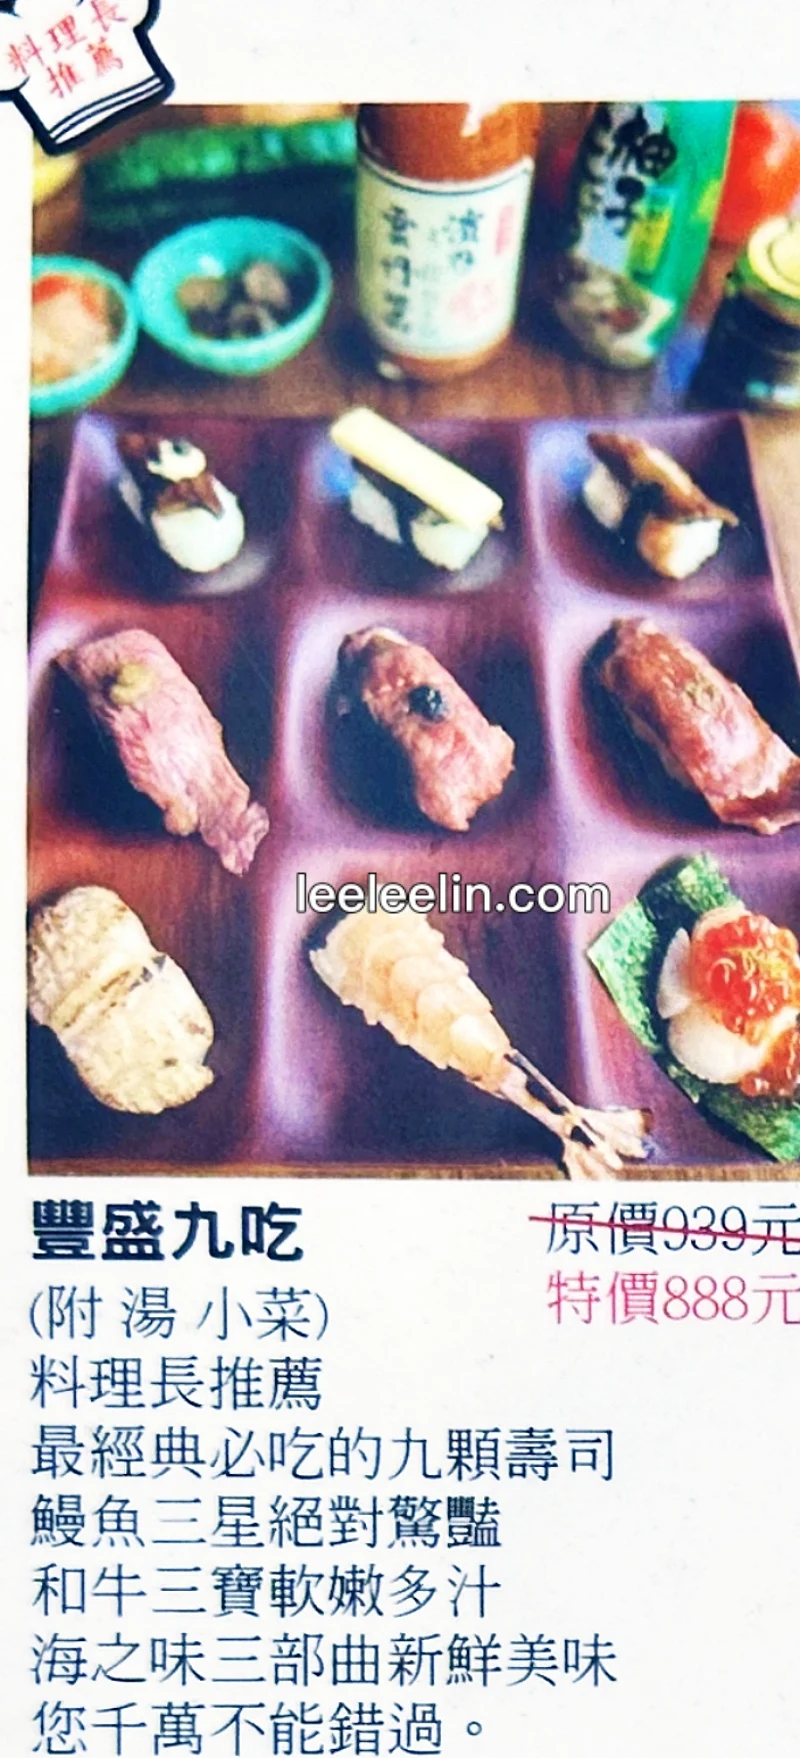 豐藏鰻魚料理專門 菜單MENU（附蔬食）台南保安路美食 放大清晰版詳細分類資訊